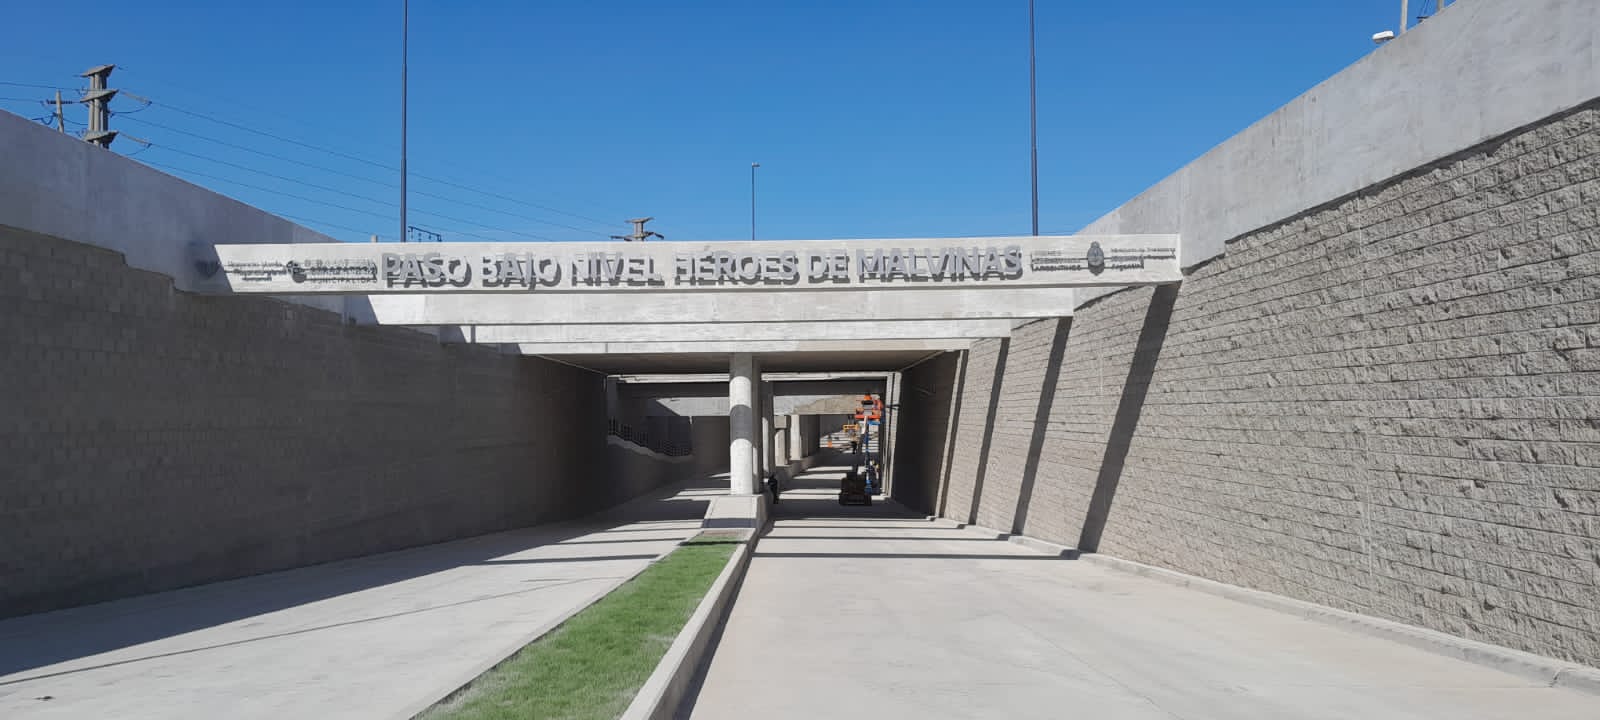 #ElVarelaQueQueremos: Inauguración del Paso Bajo Nivel “Héroes de Malvinas”. 